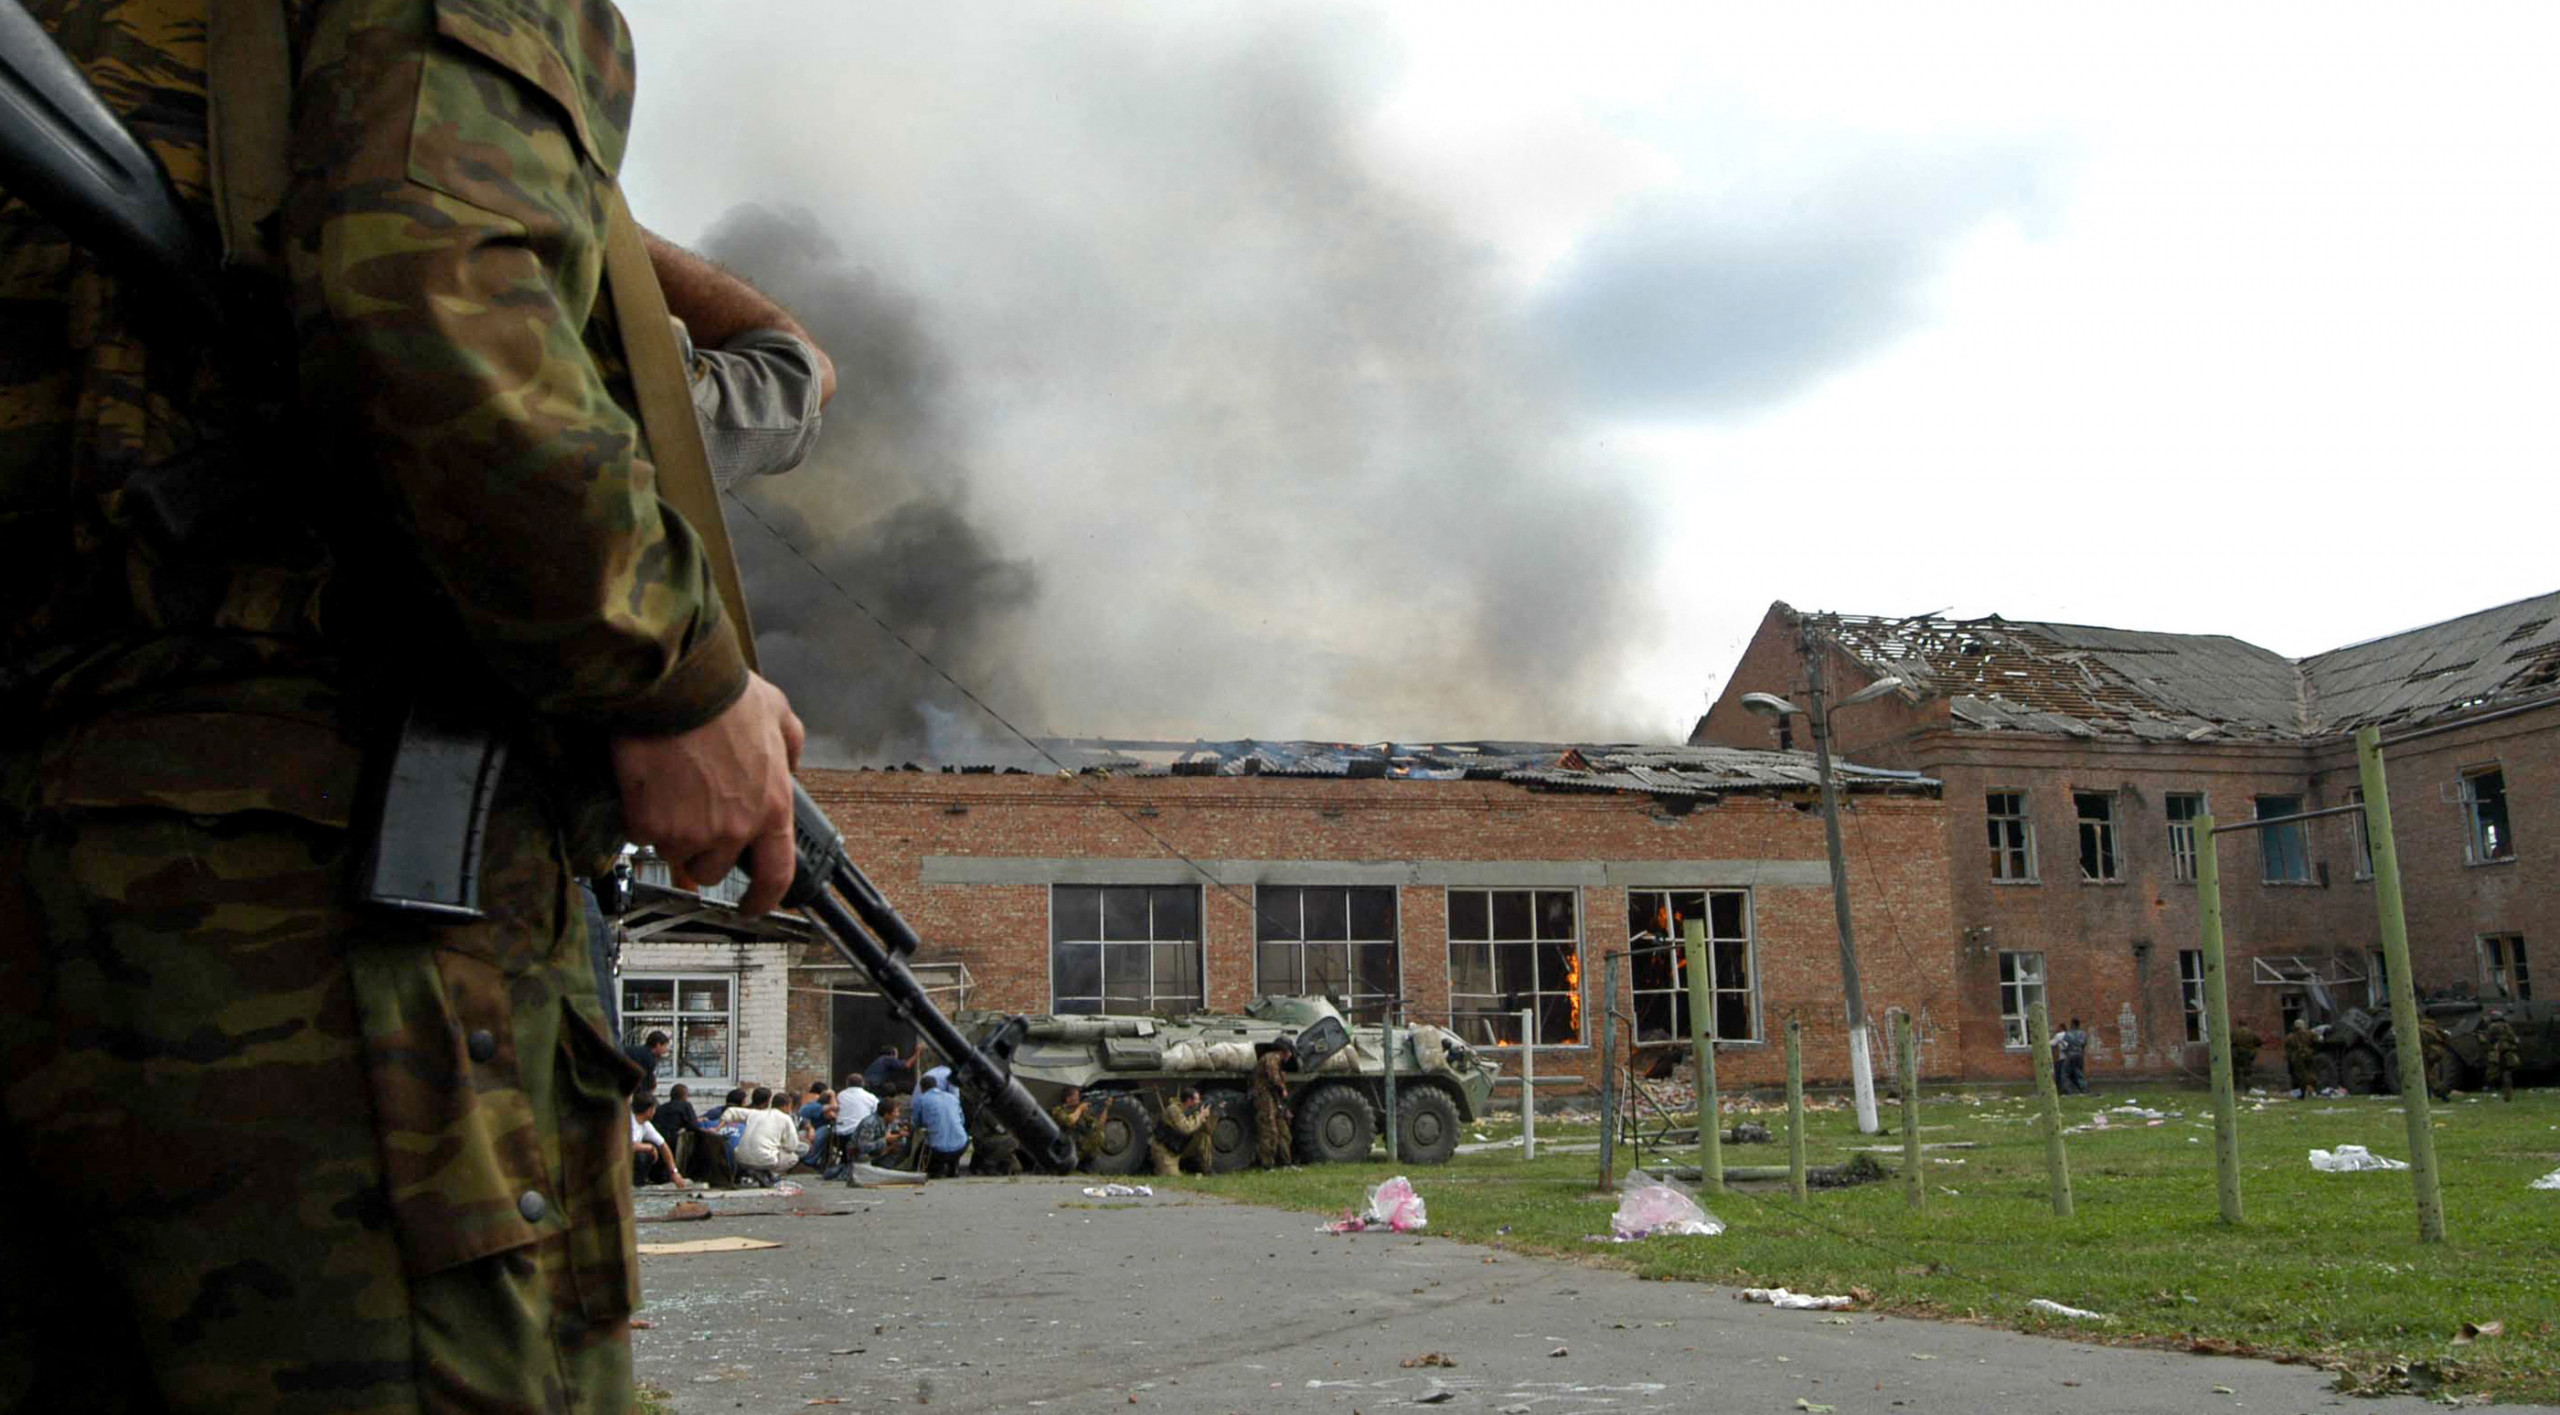 22 июня 2004. Беслан 1 сентября 2004 штурм. 2004 — Захвачена школа в Беслане.